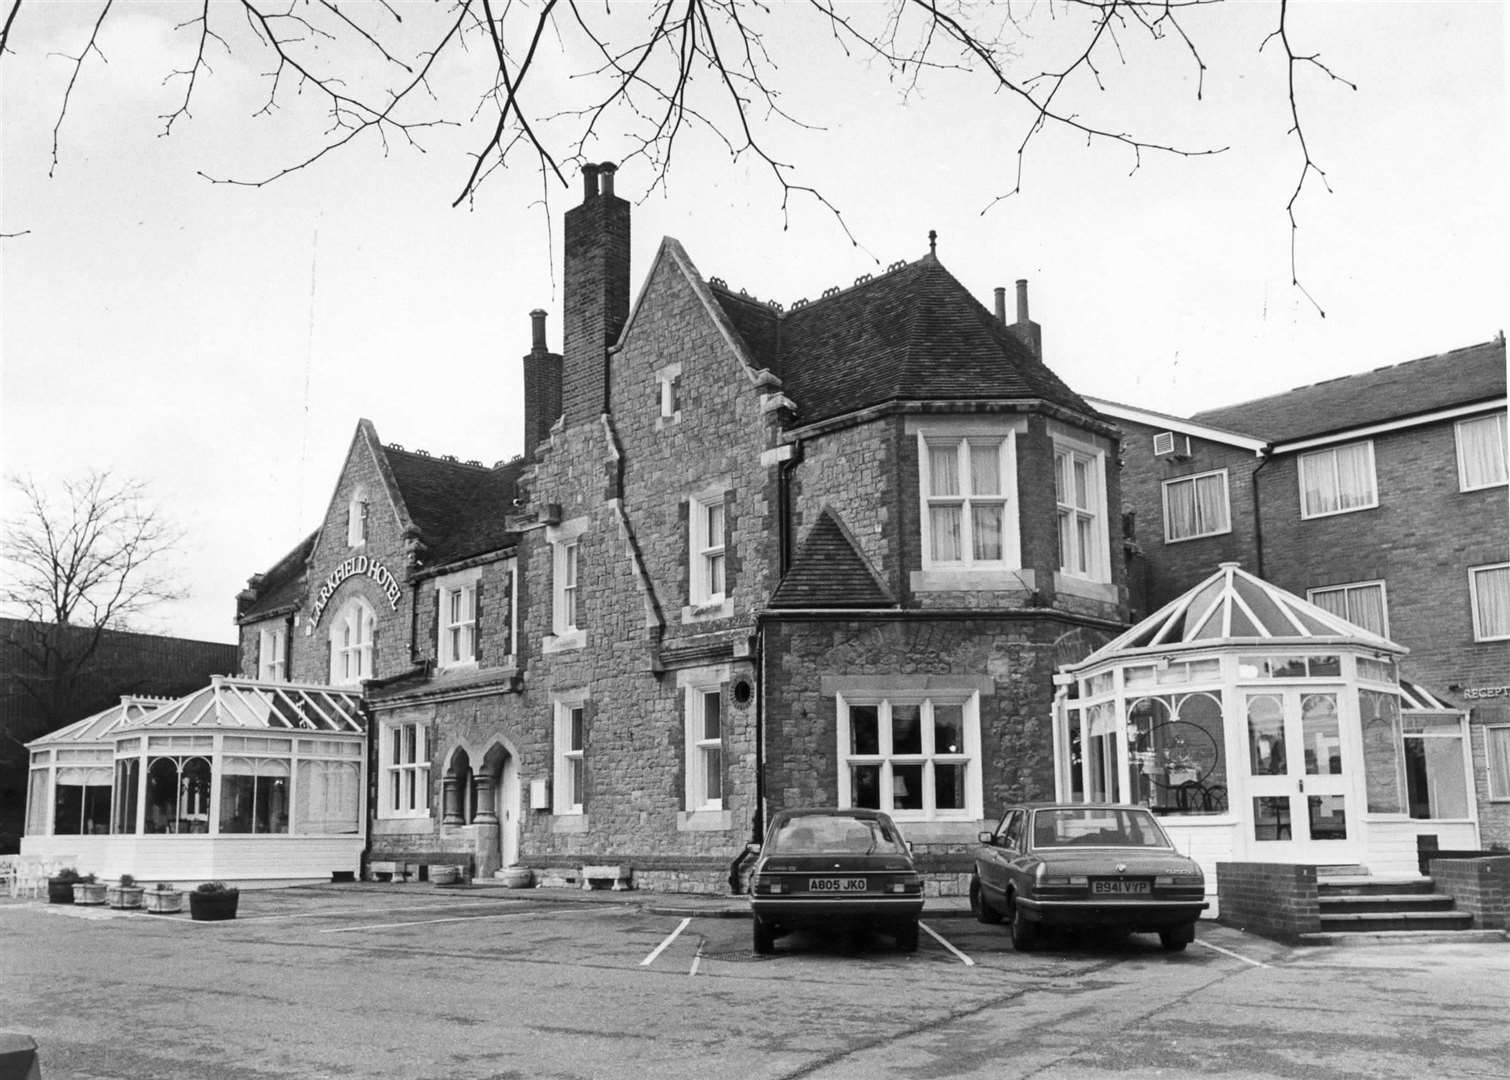 The Larkfield Hotel, Larkfield, in December 1985